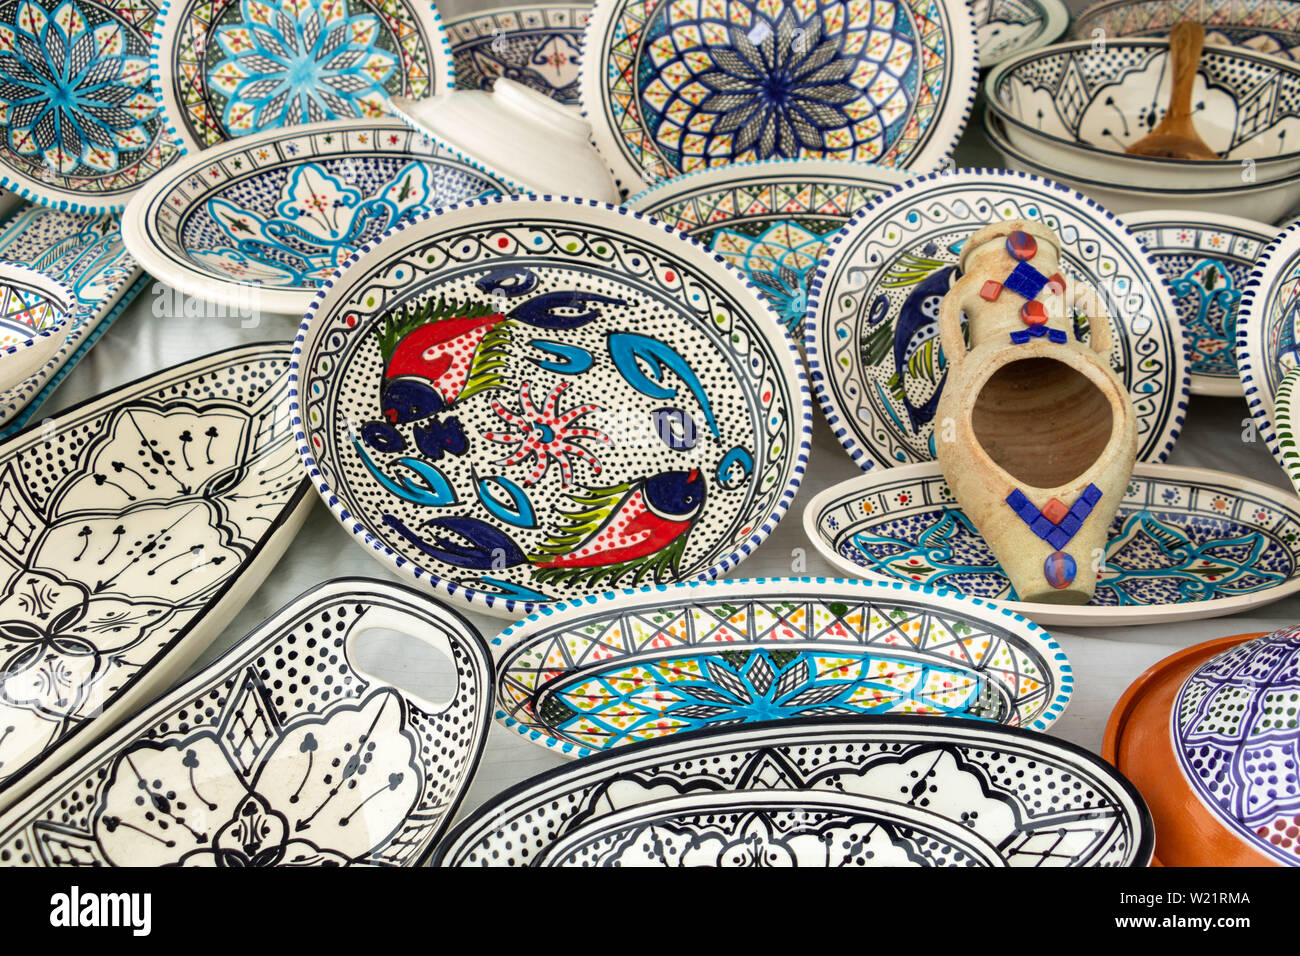 Decorative ceramic tableware, Mediterranean crafts Stock Photo